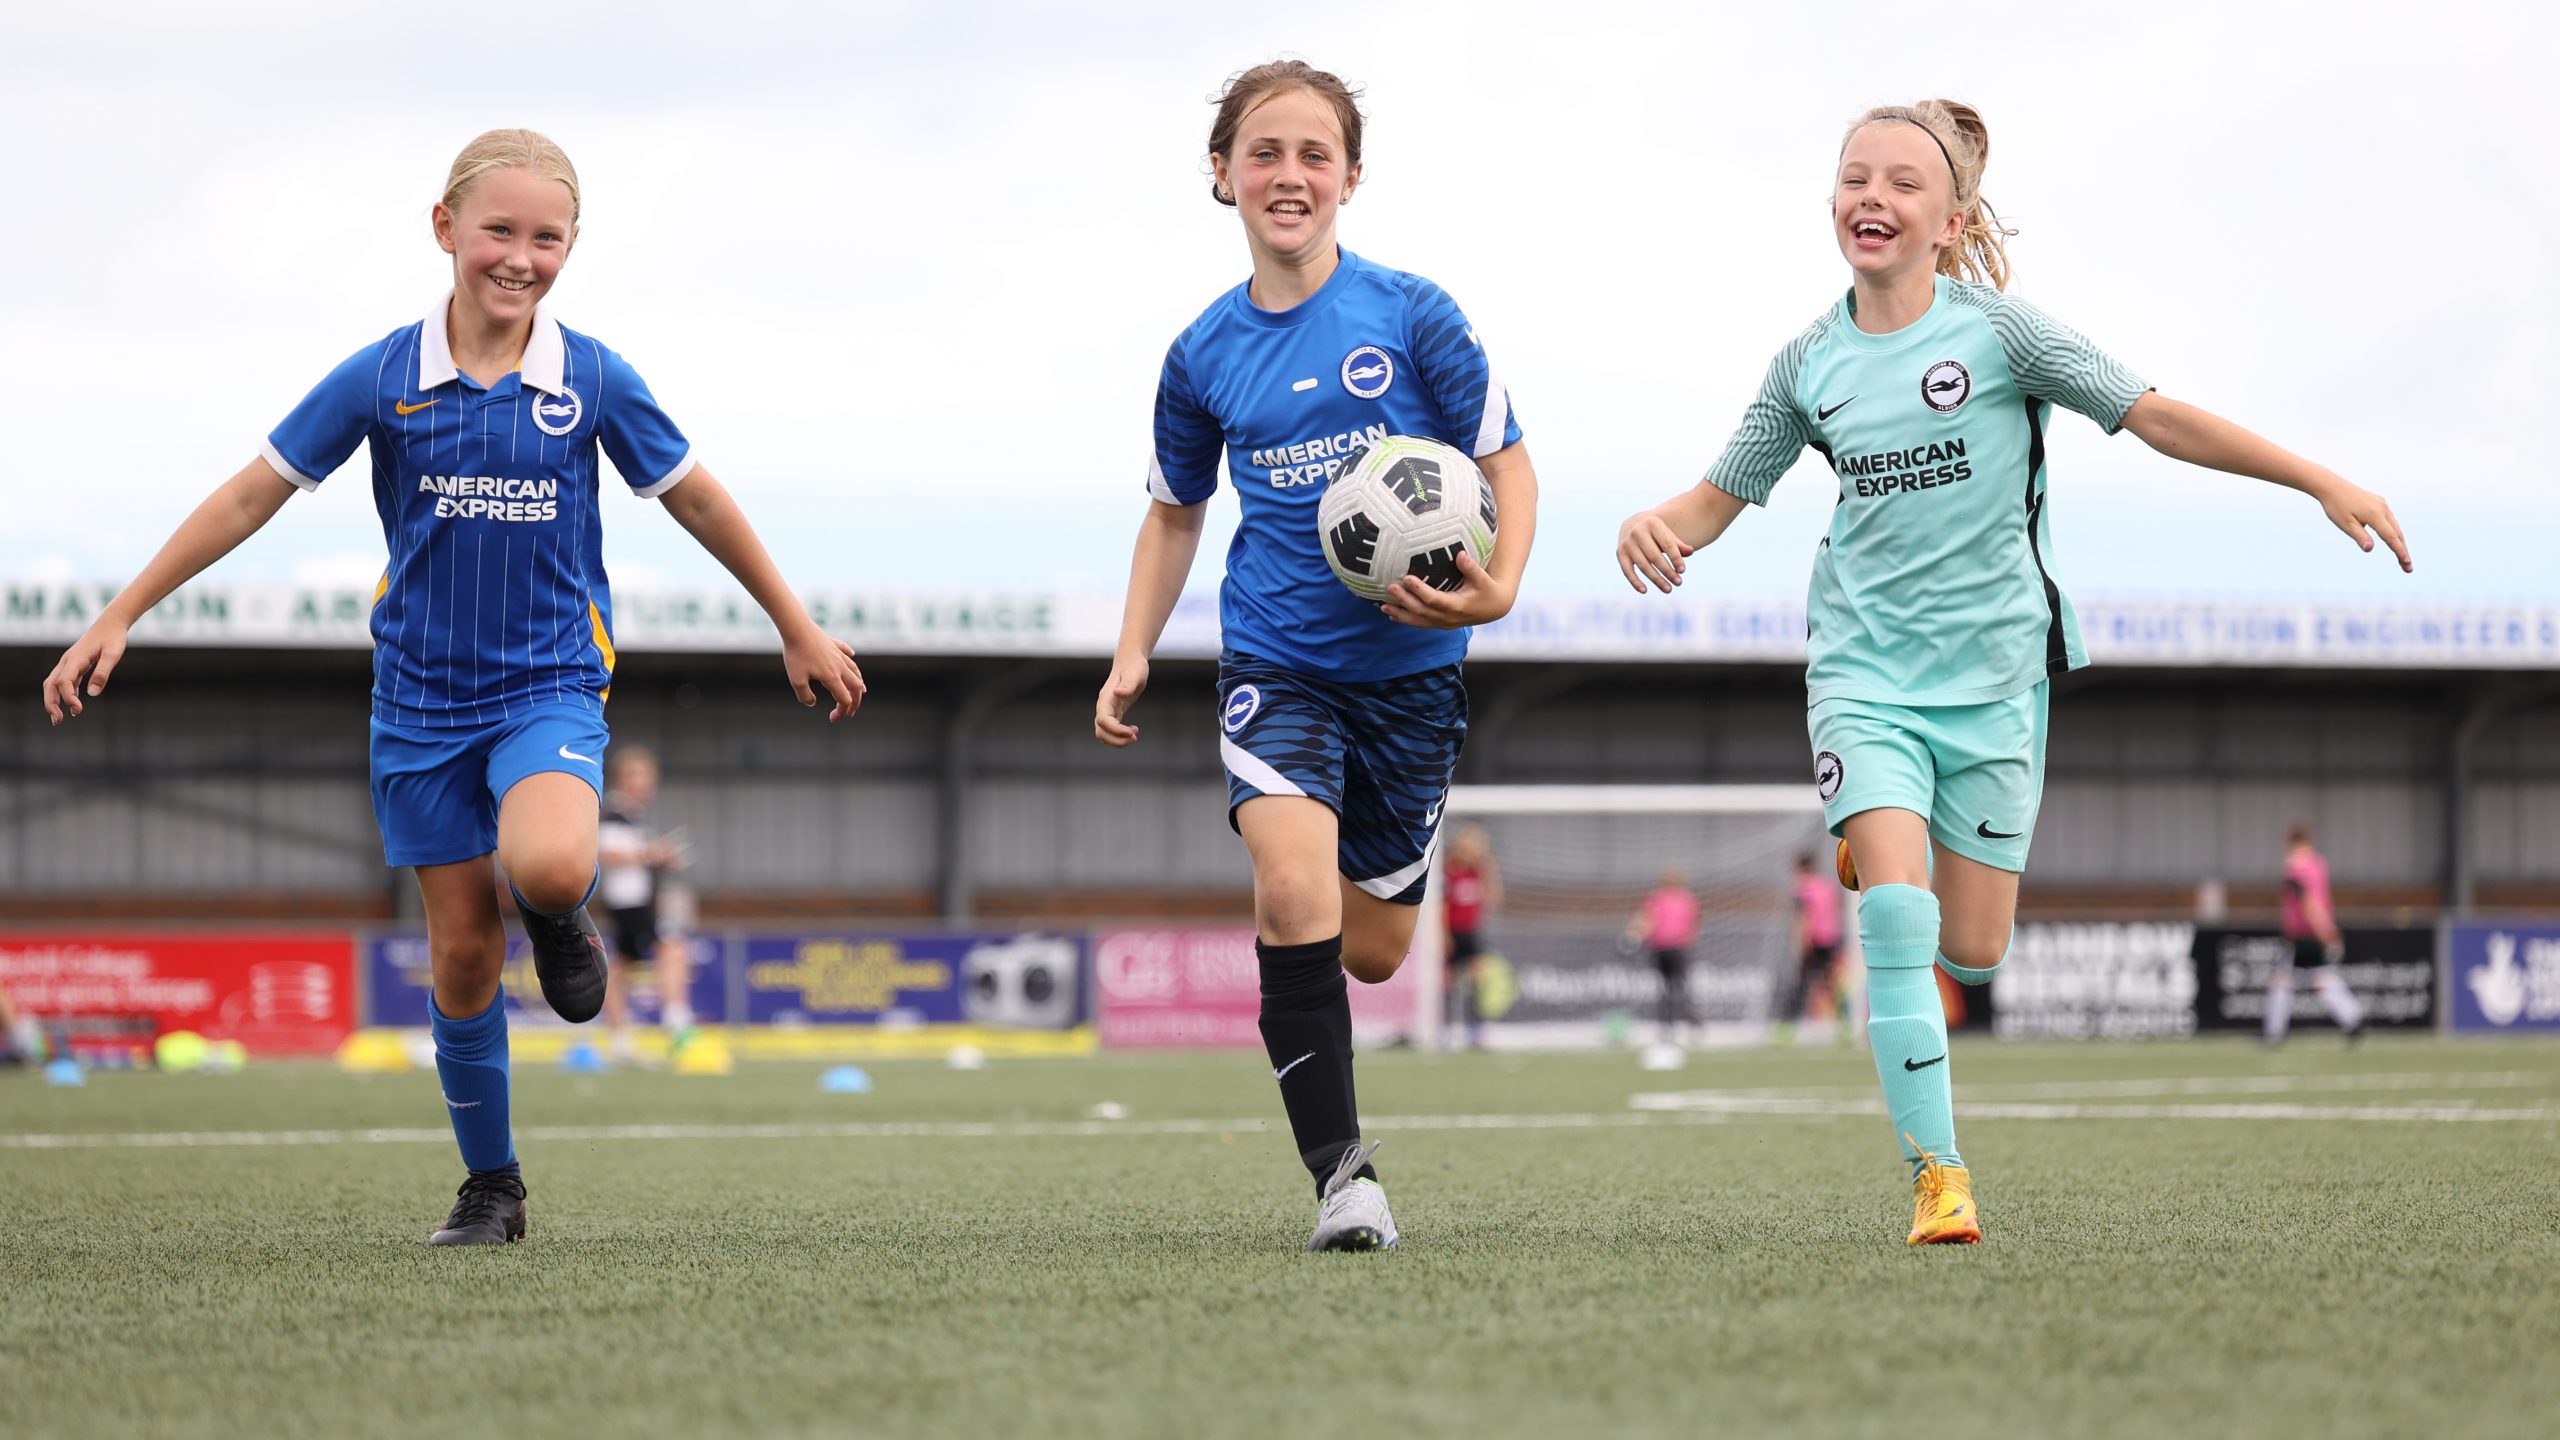 30 girls enjoy free football thanks to generous Snickers UK sponsorship